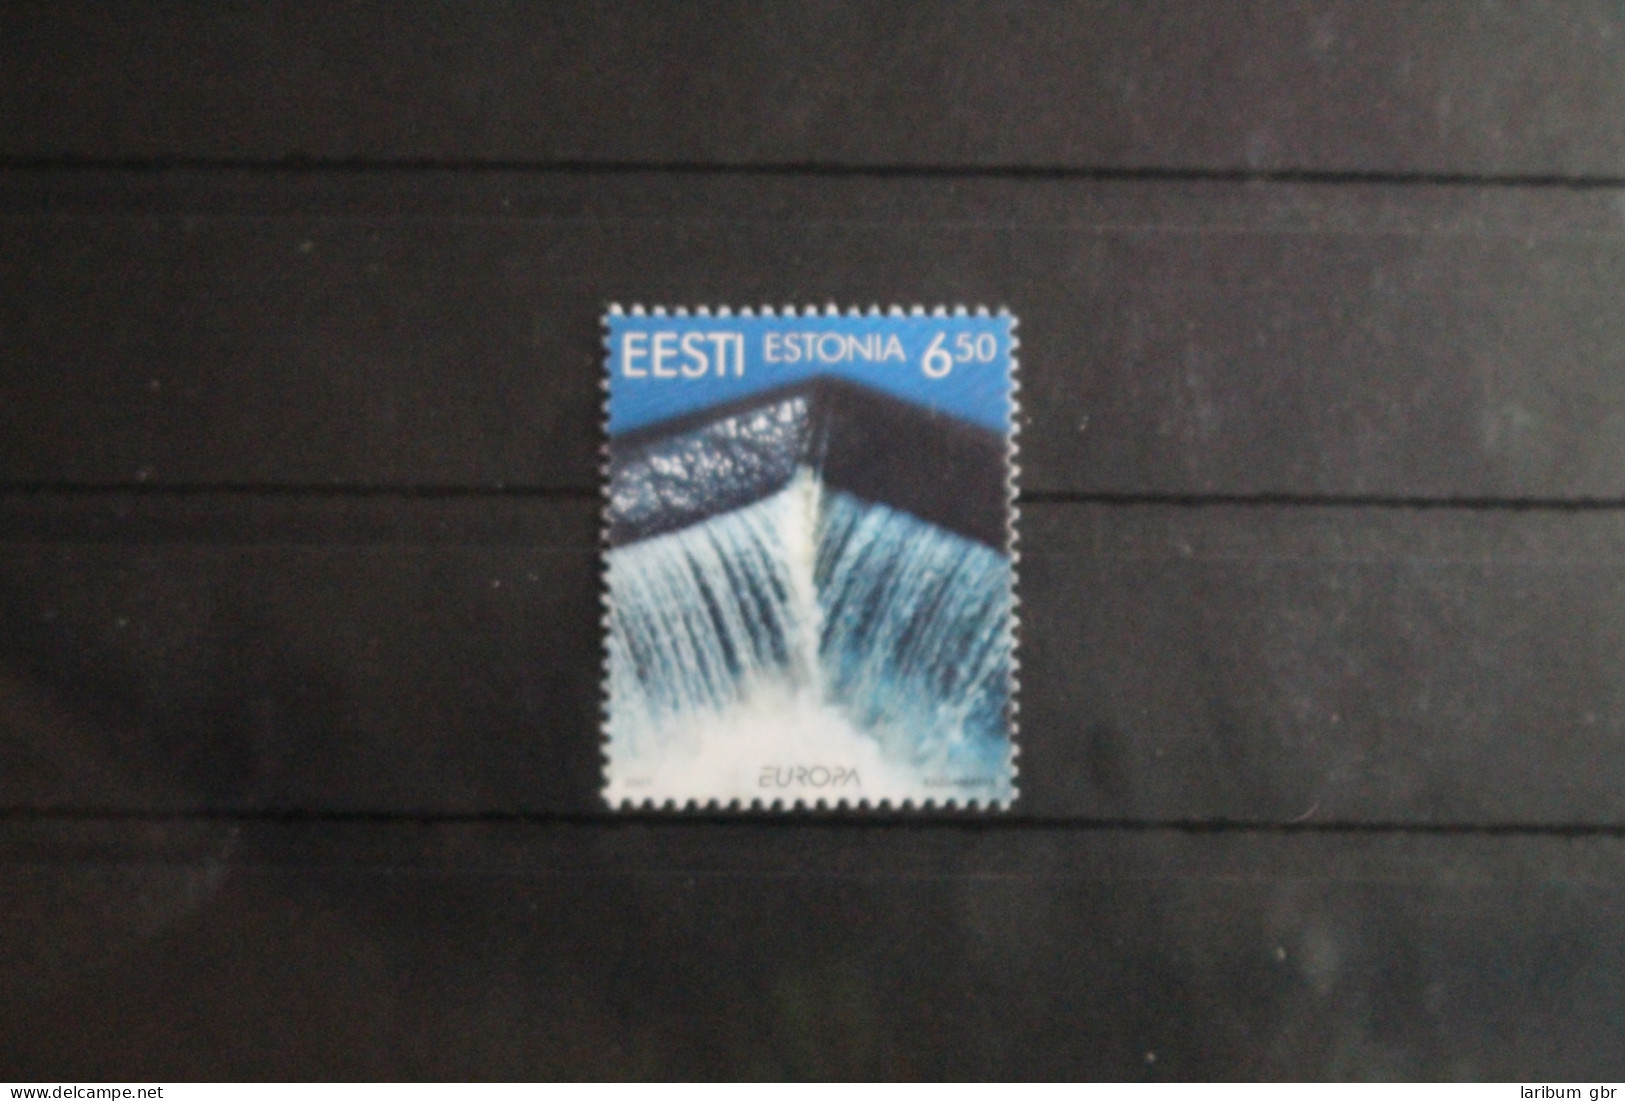 Estland 399 Postfrisch Europa Lebensspender Wasser #VQ887 - Estonia